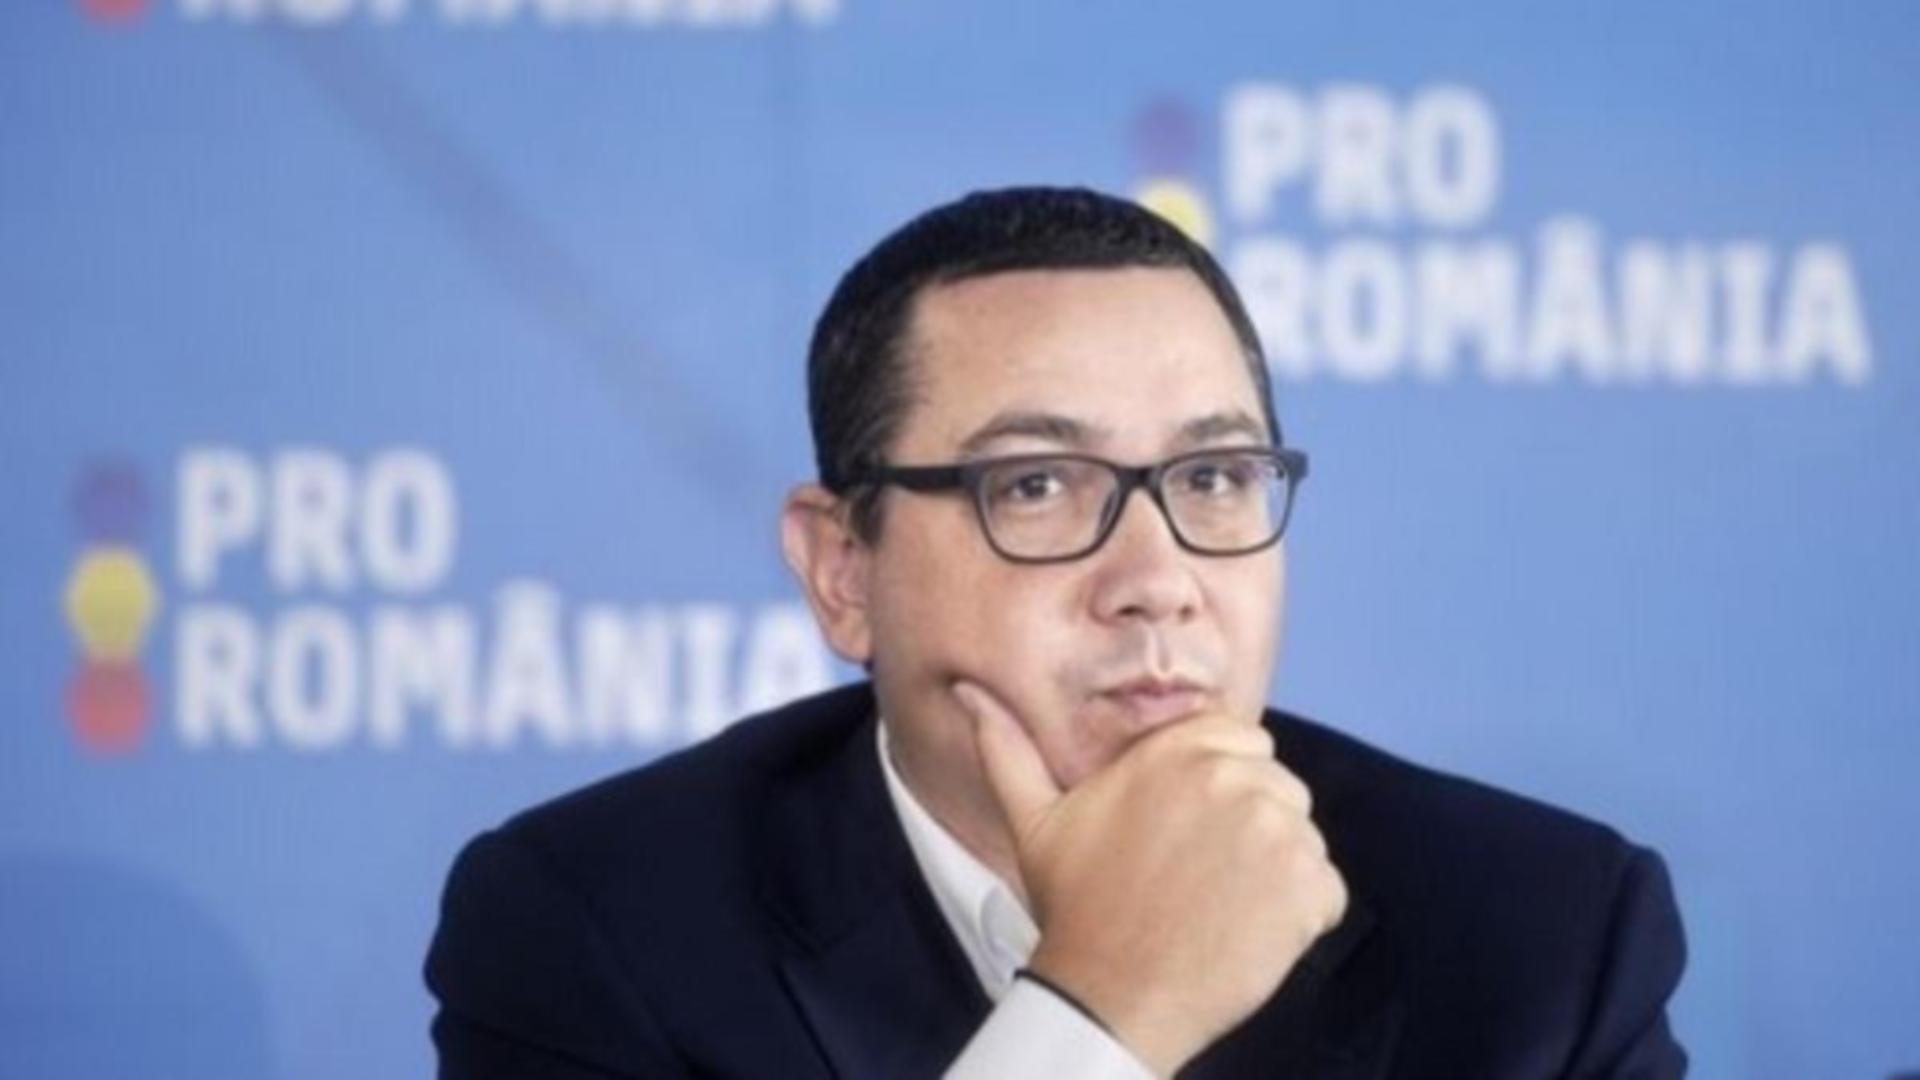 Victor Ponta aruncă în aer “sistem ocult” care vrea să guverneze. Ce spune fostul premier despre conflictul armat din Israel